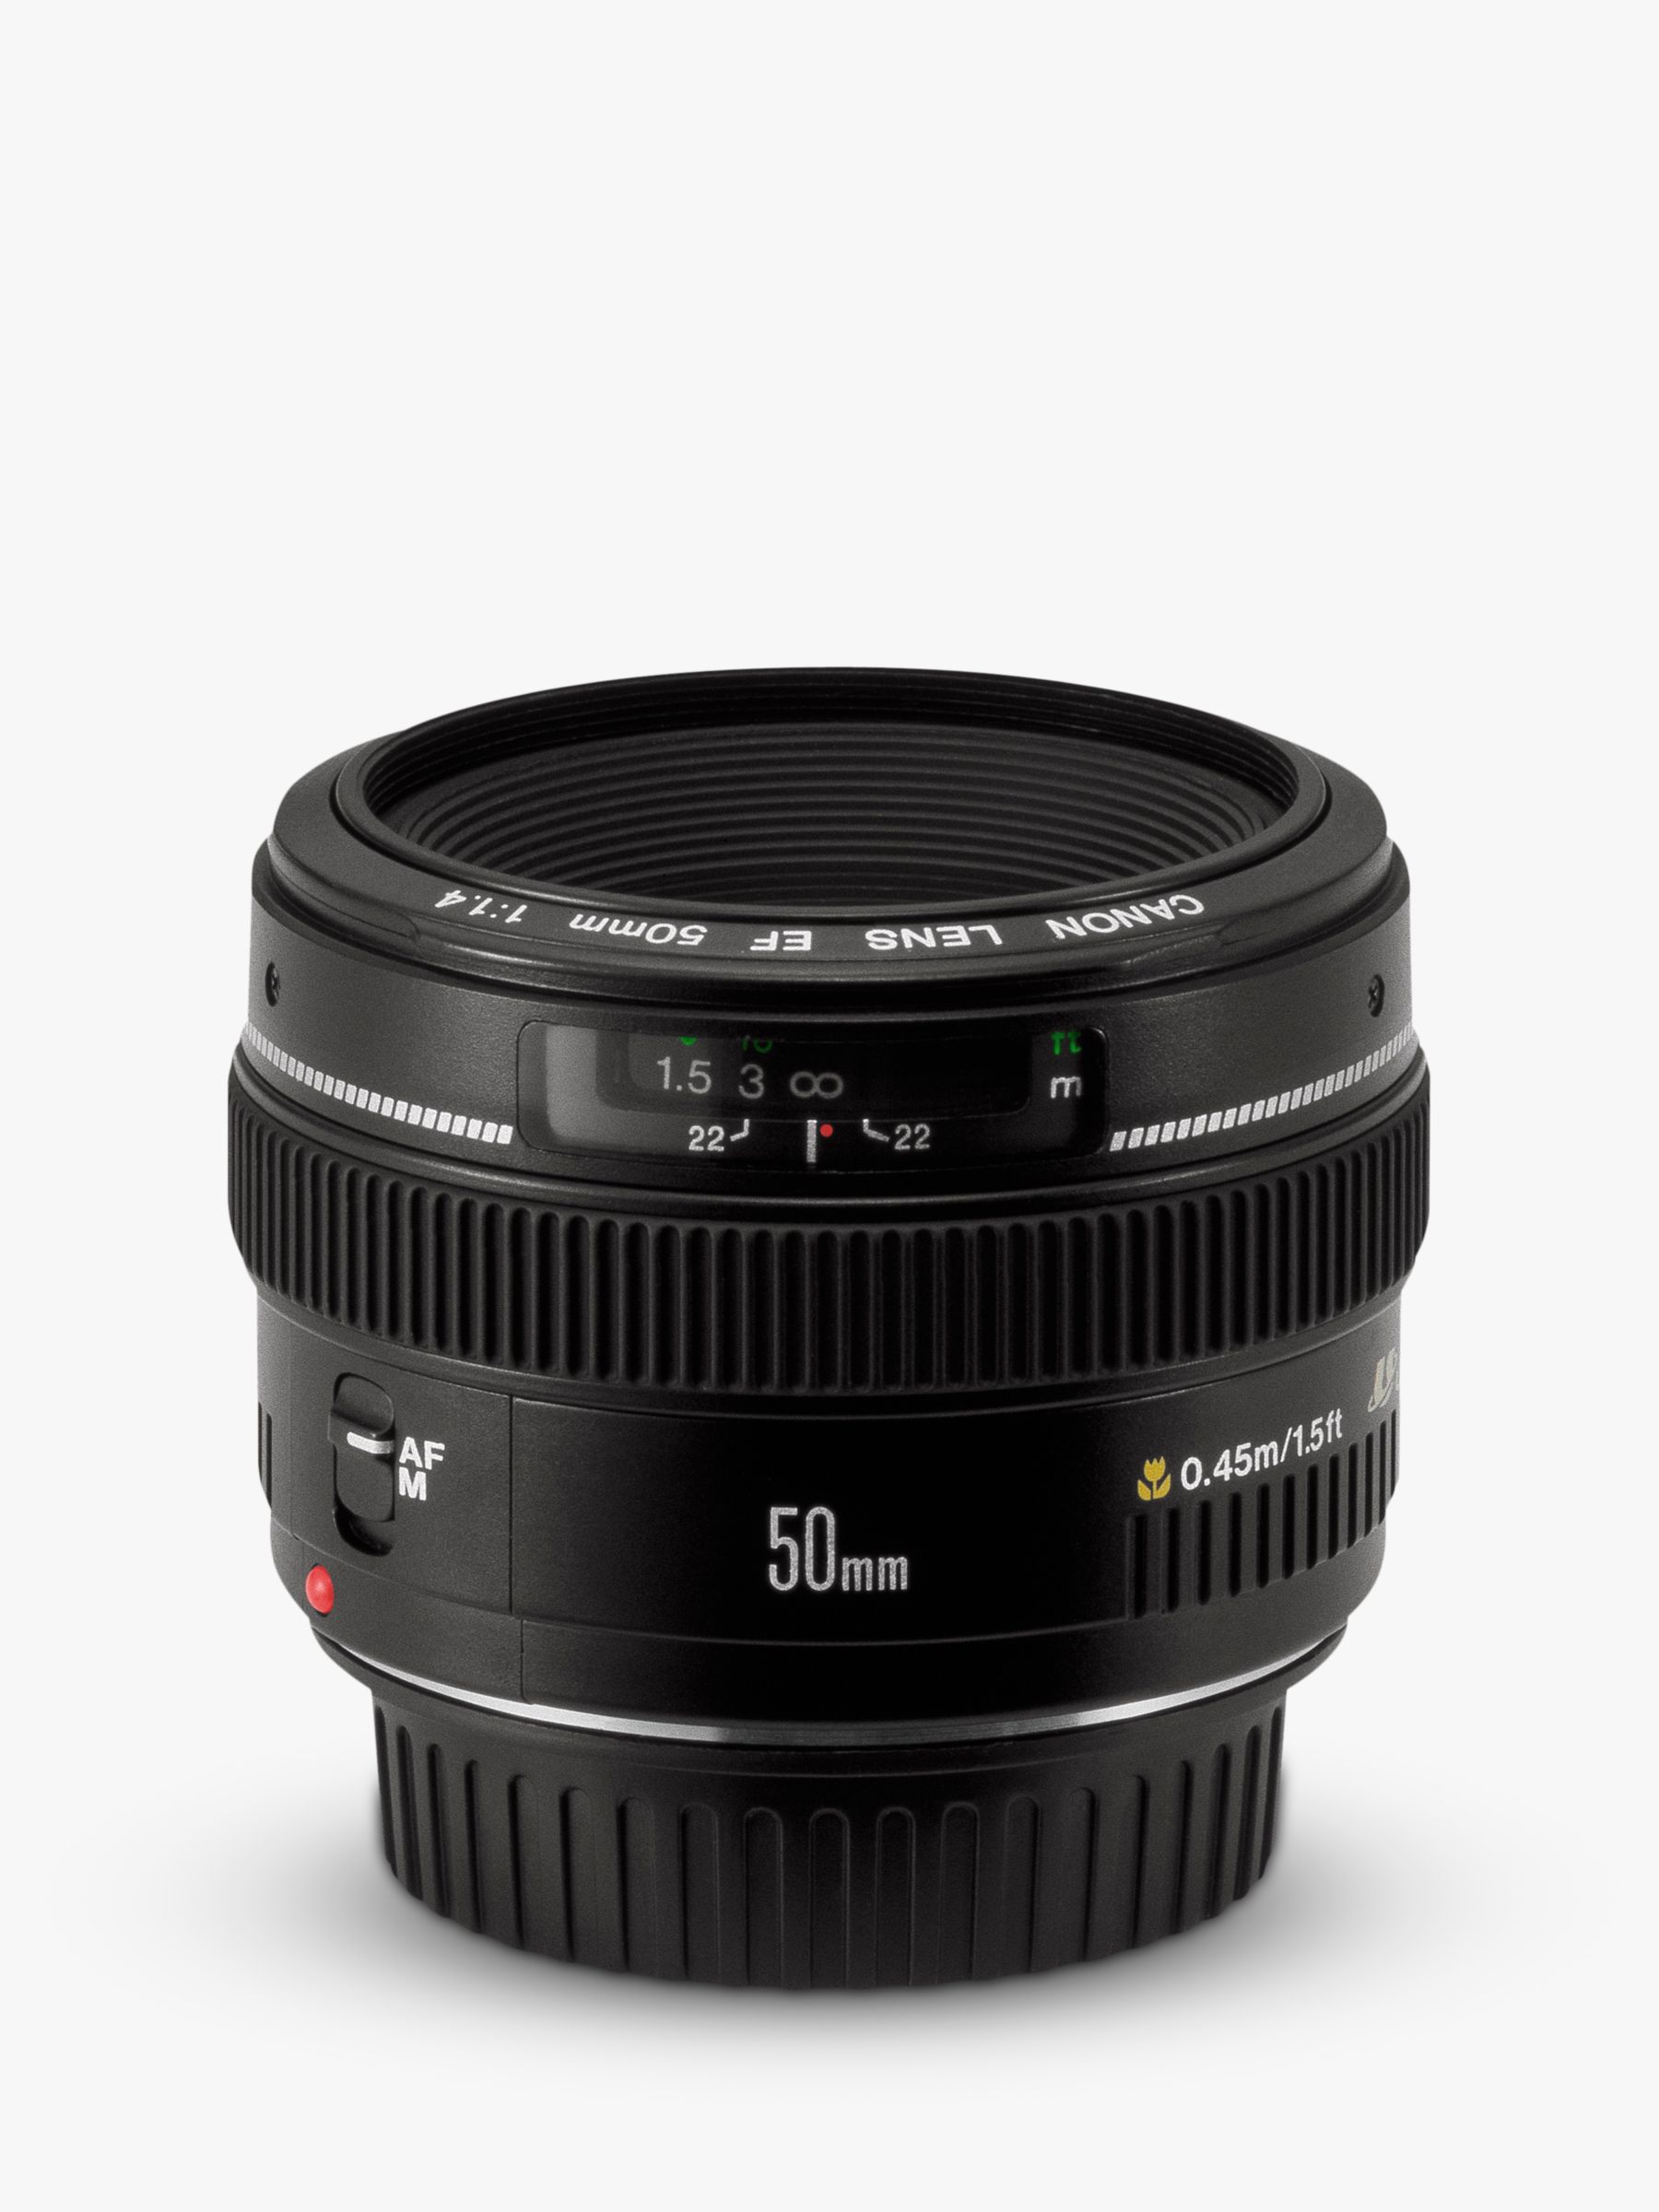 Image of Canon EF 50mm f14 USM Standard Lens